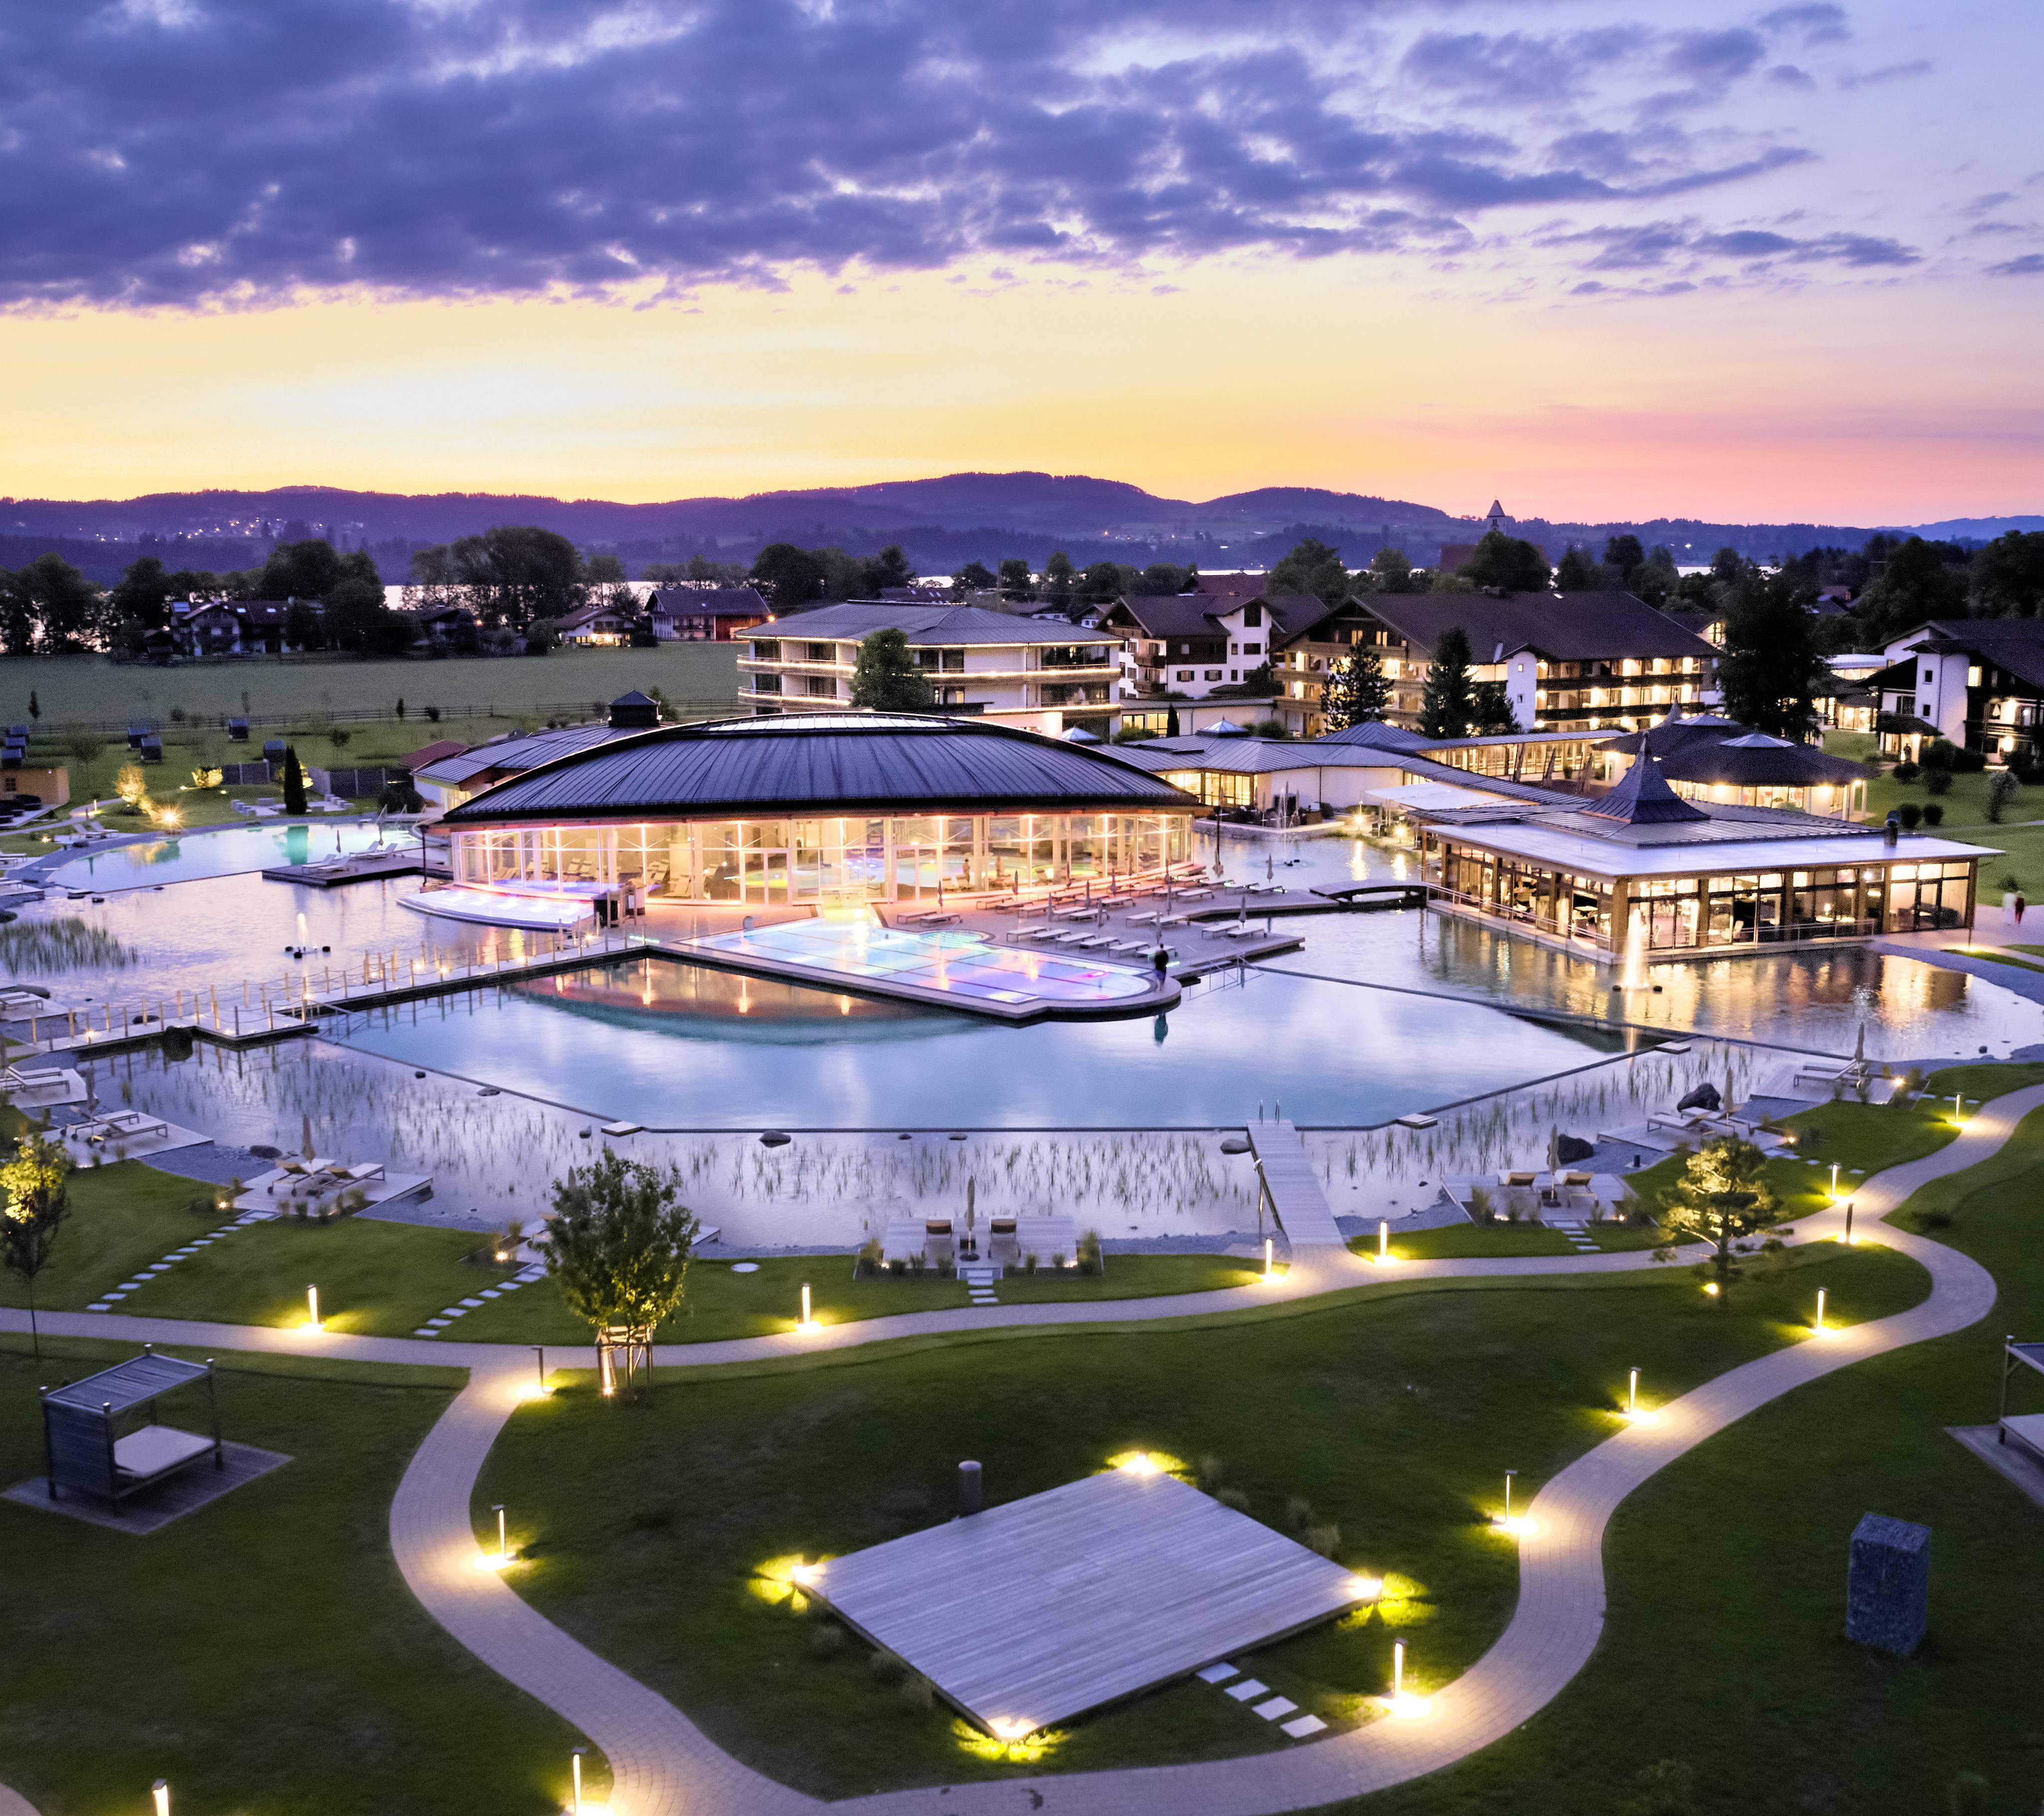 Ansicht von einem Luxus Spa Resort im Allgäu in Bayern